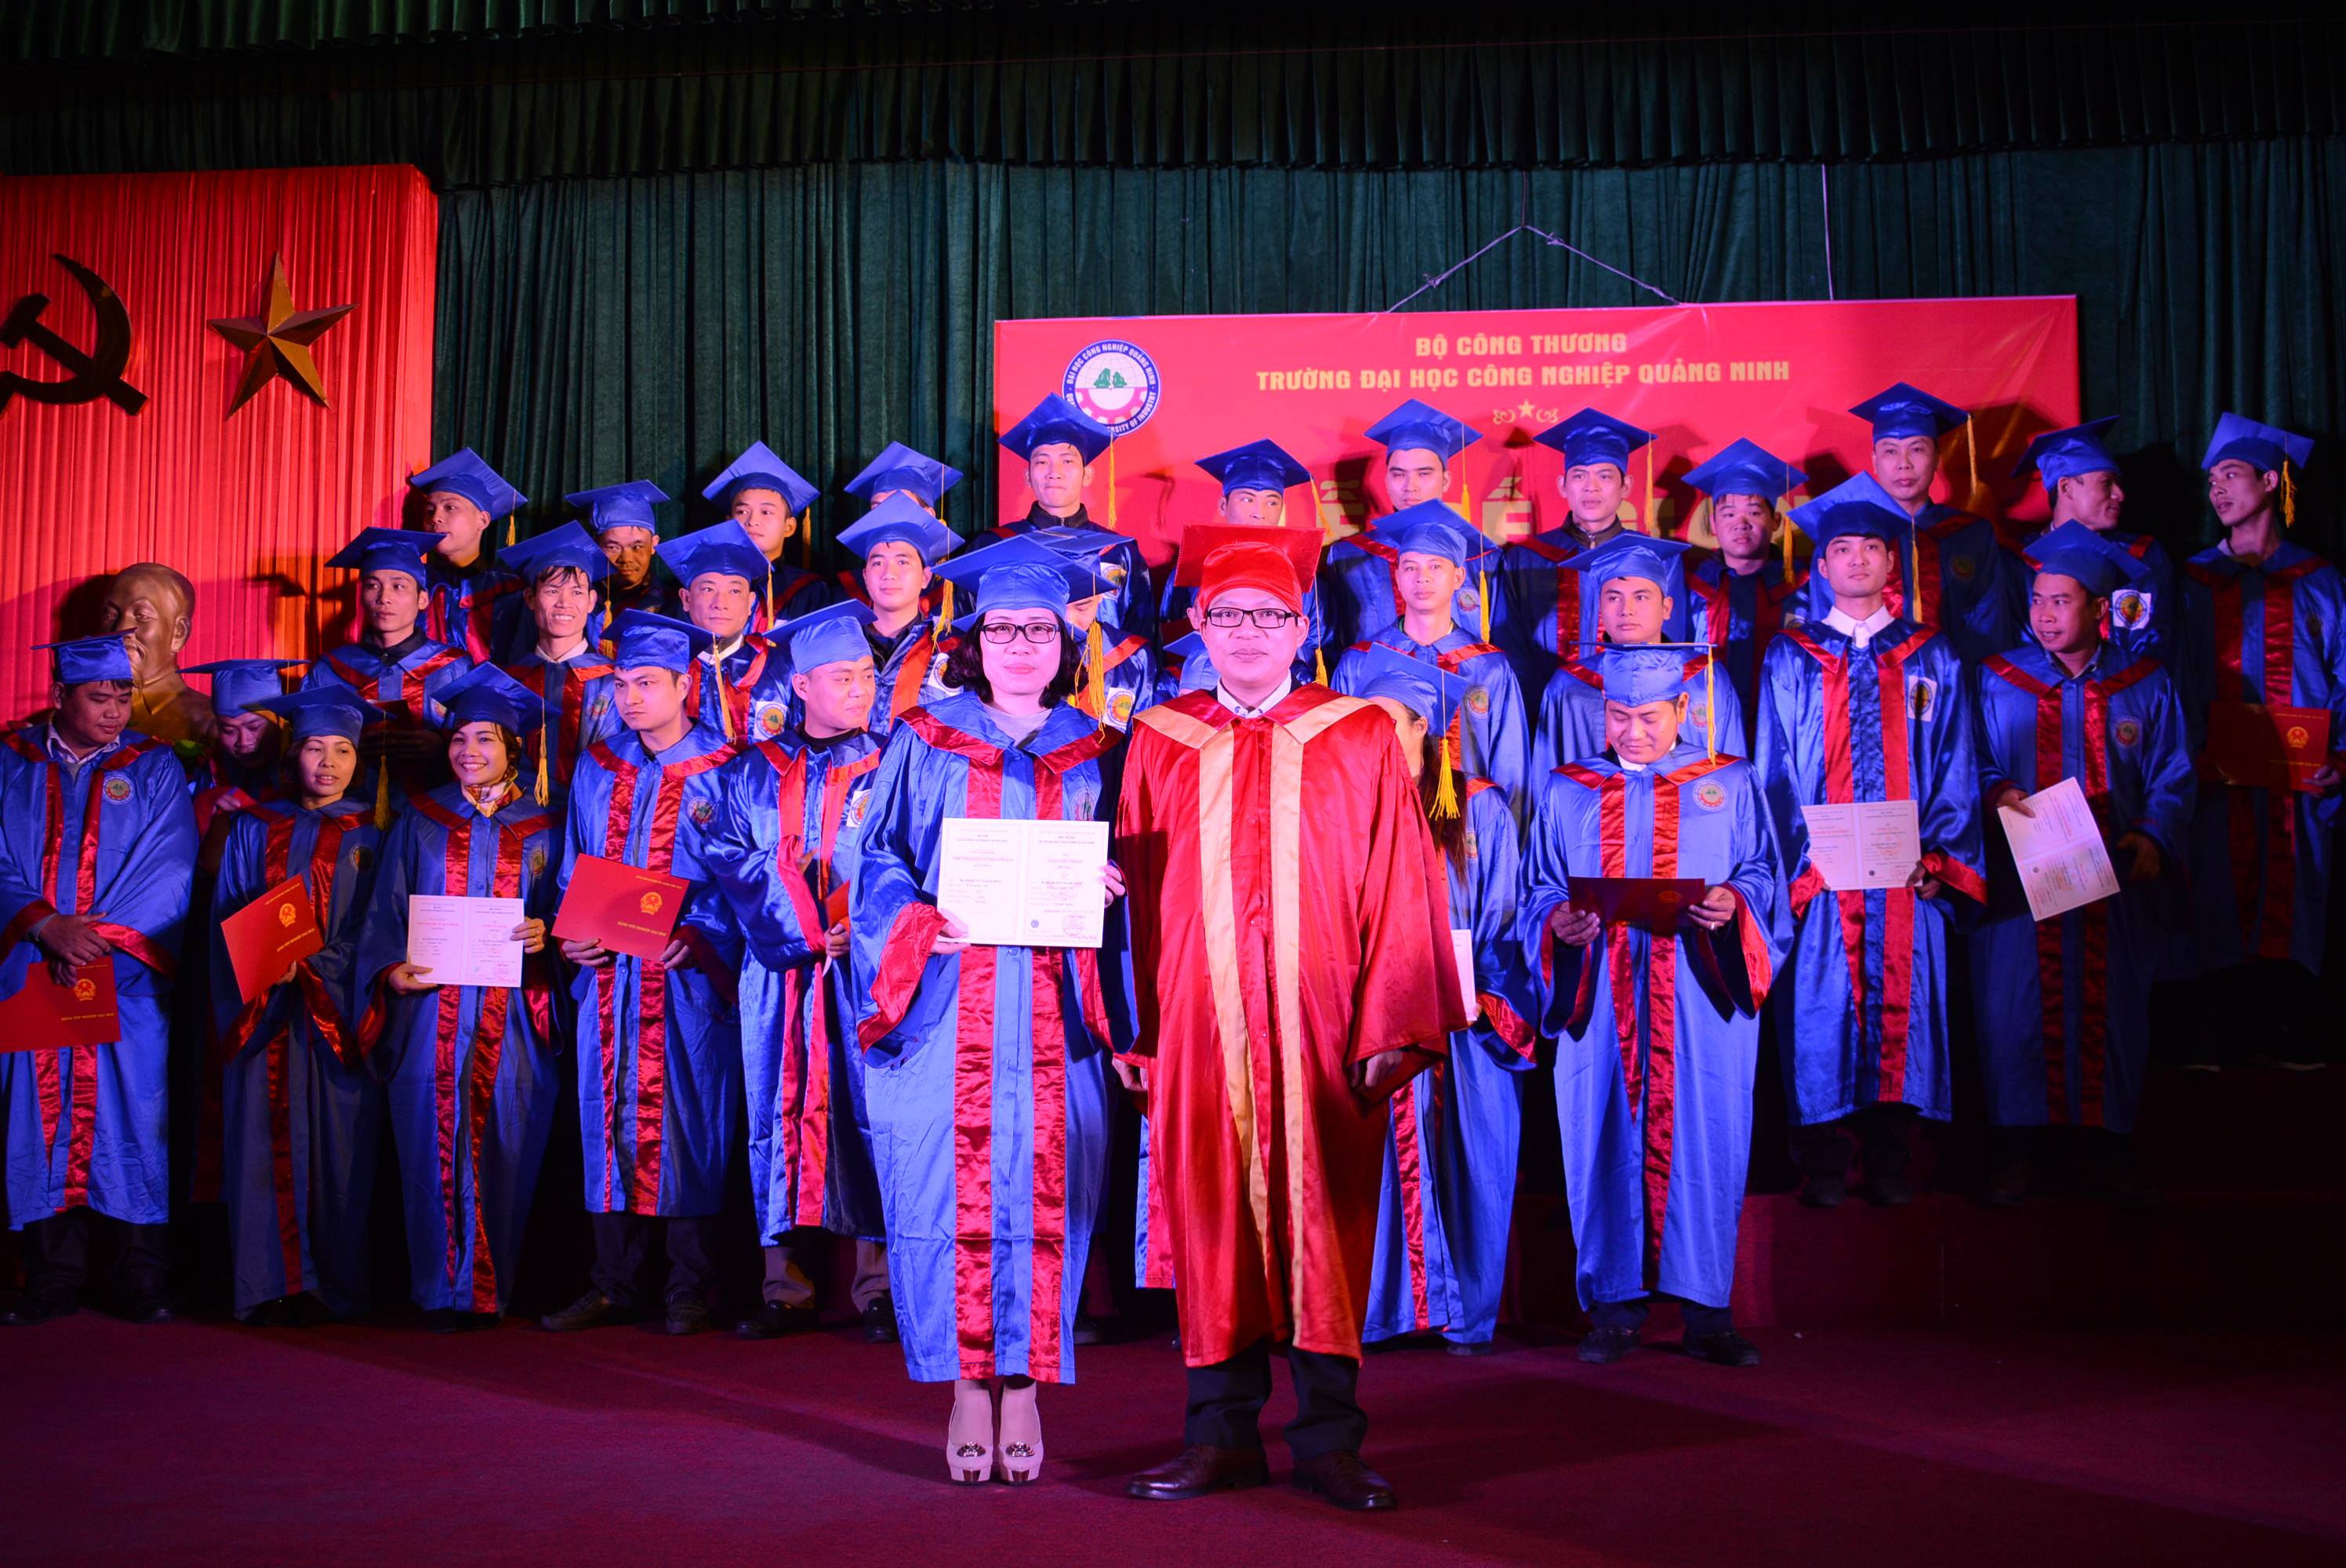 Trường Đại học CNQN tổ chức Lễ bế giảng các lớp Đại học và Văn bằng 2 Đại học hệ VHVL K4